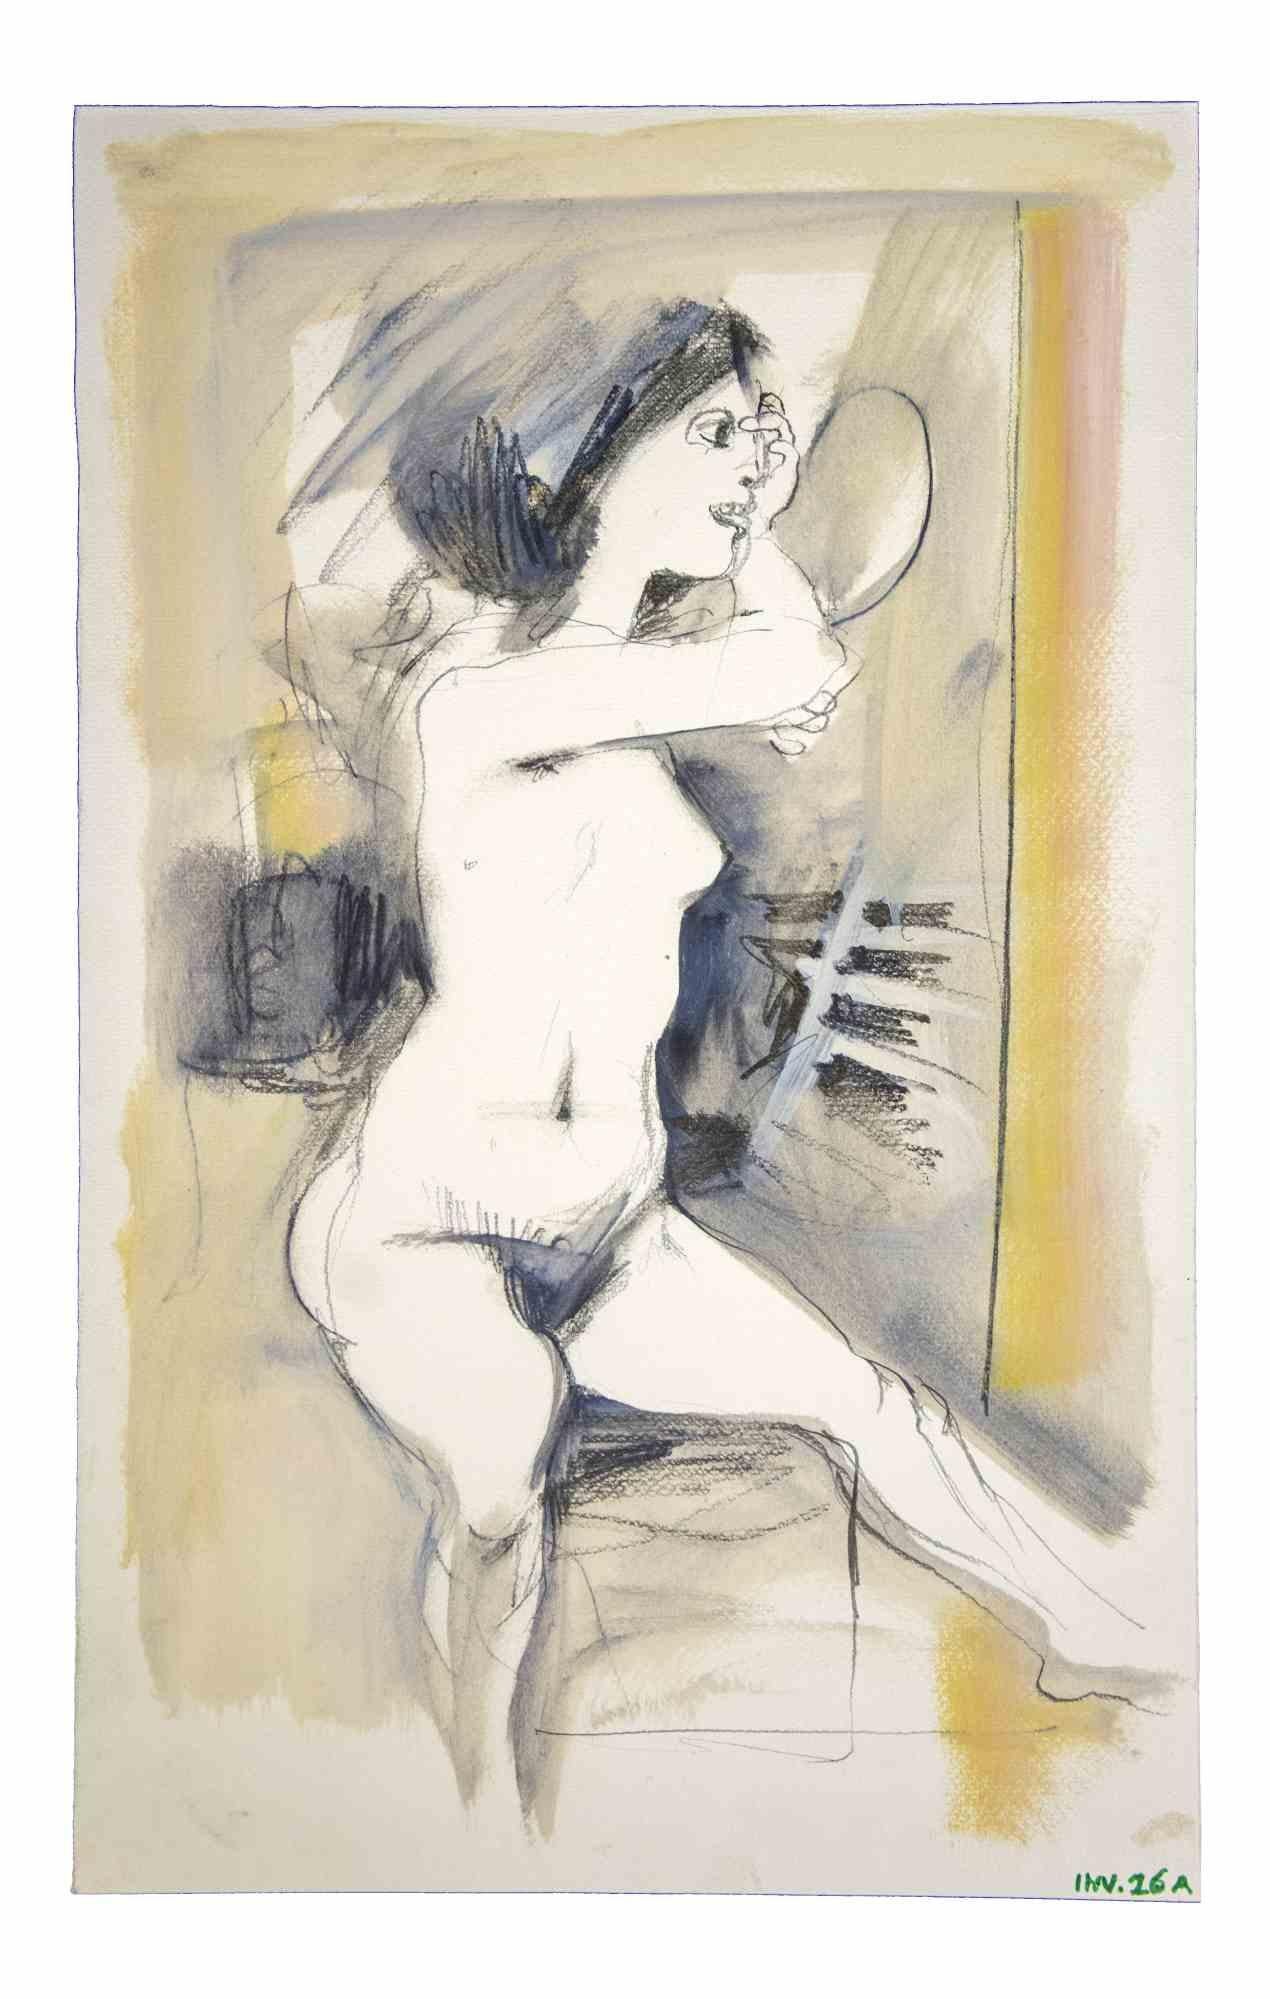 Female Figure ist ein Original-Kunstwerk, das in den 1970er Jahren von dem italienischen zeitgenössischen Künstler  Leo Guida  (1992 - 2017).

Originalzeichnungen in Kohle, Porzellantusche und Aquarell auf Papier.

Guter Zustand, aber gealtert.

Das